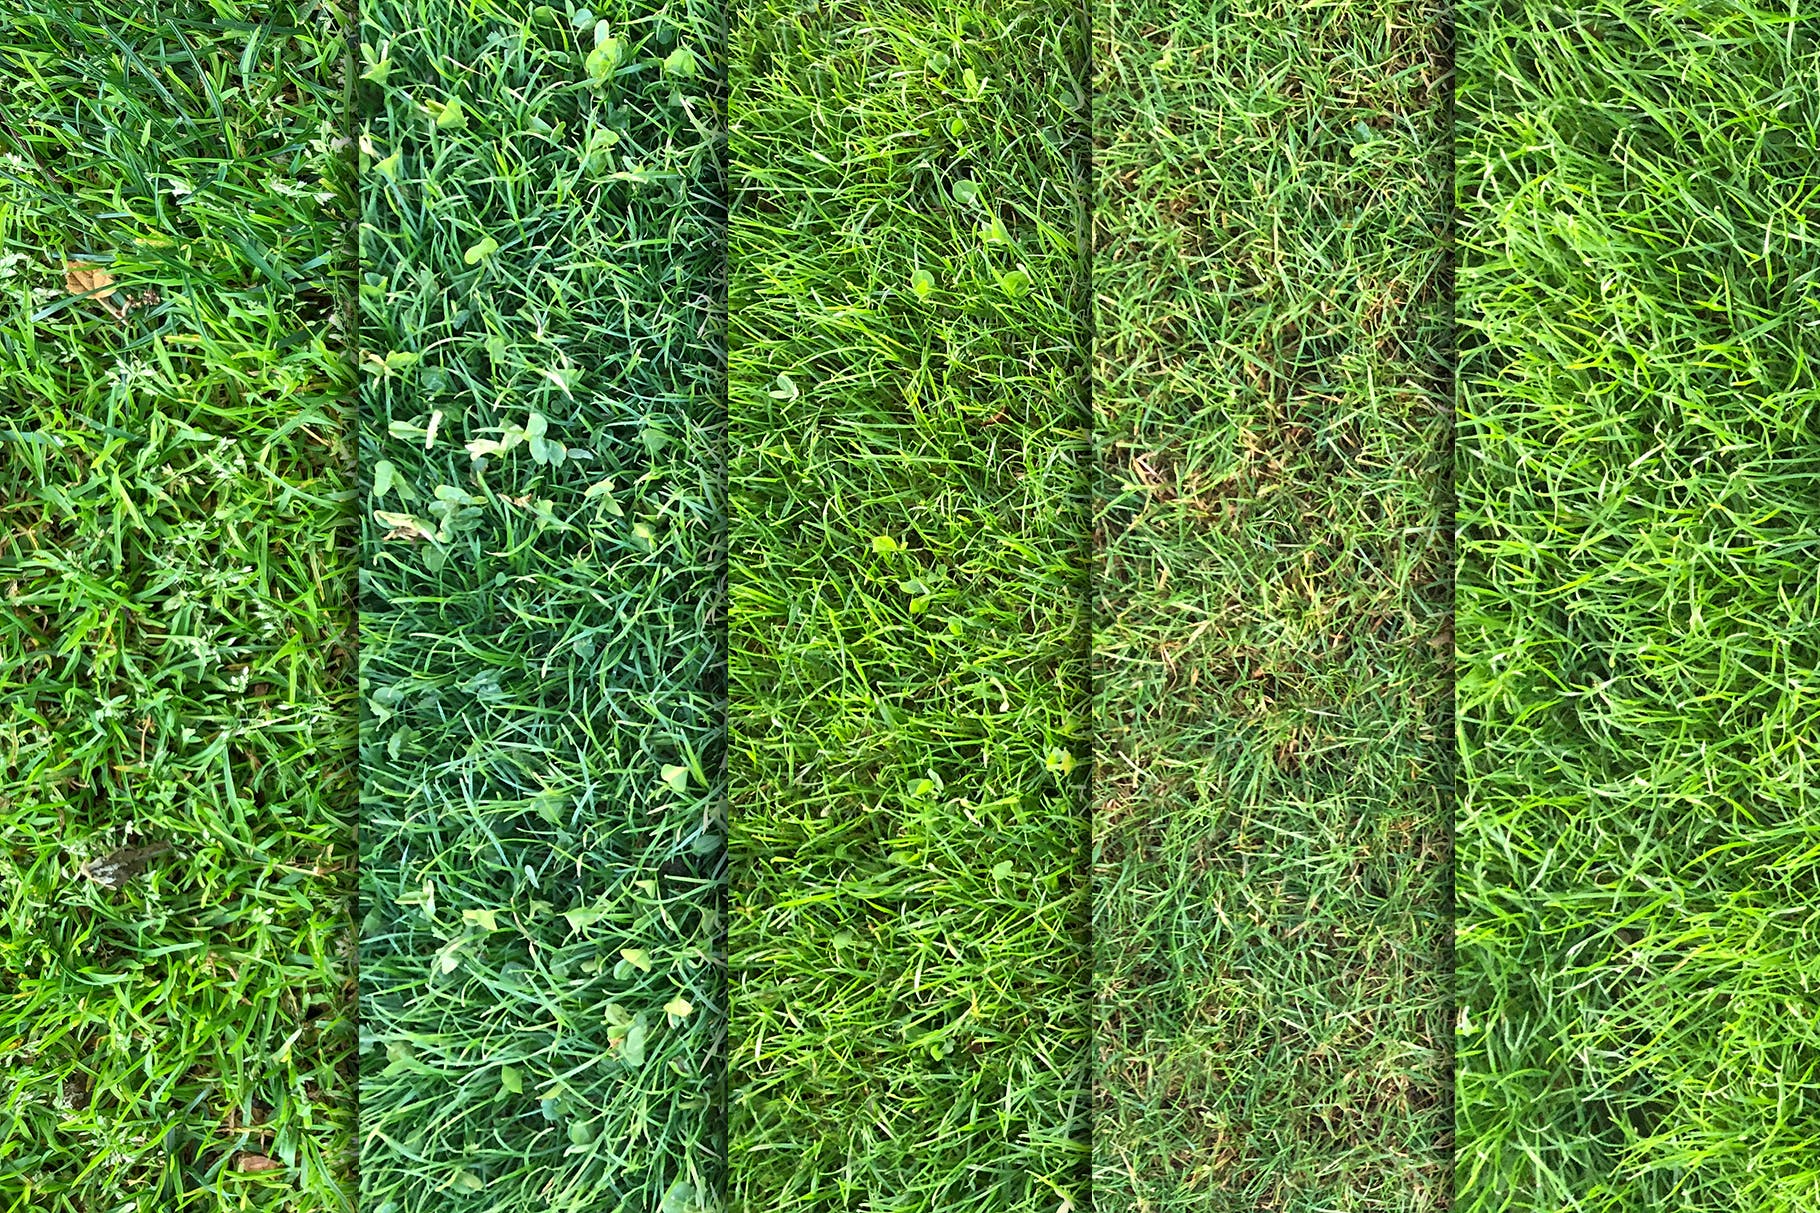 10张高清绿茵草坪照片背景素材v3 Grass Textures x10 Vol 3插图2